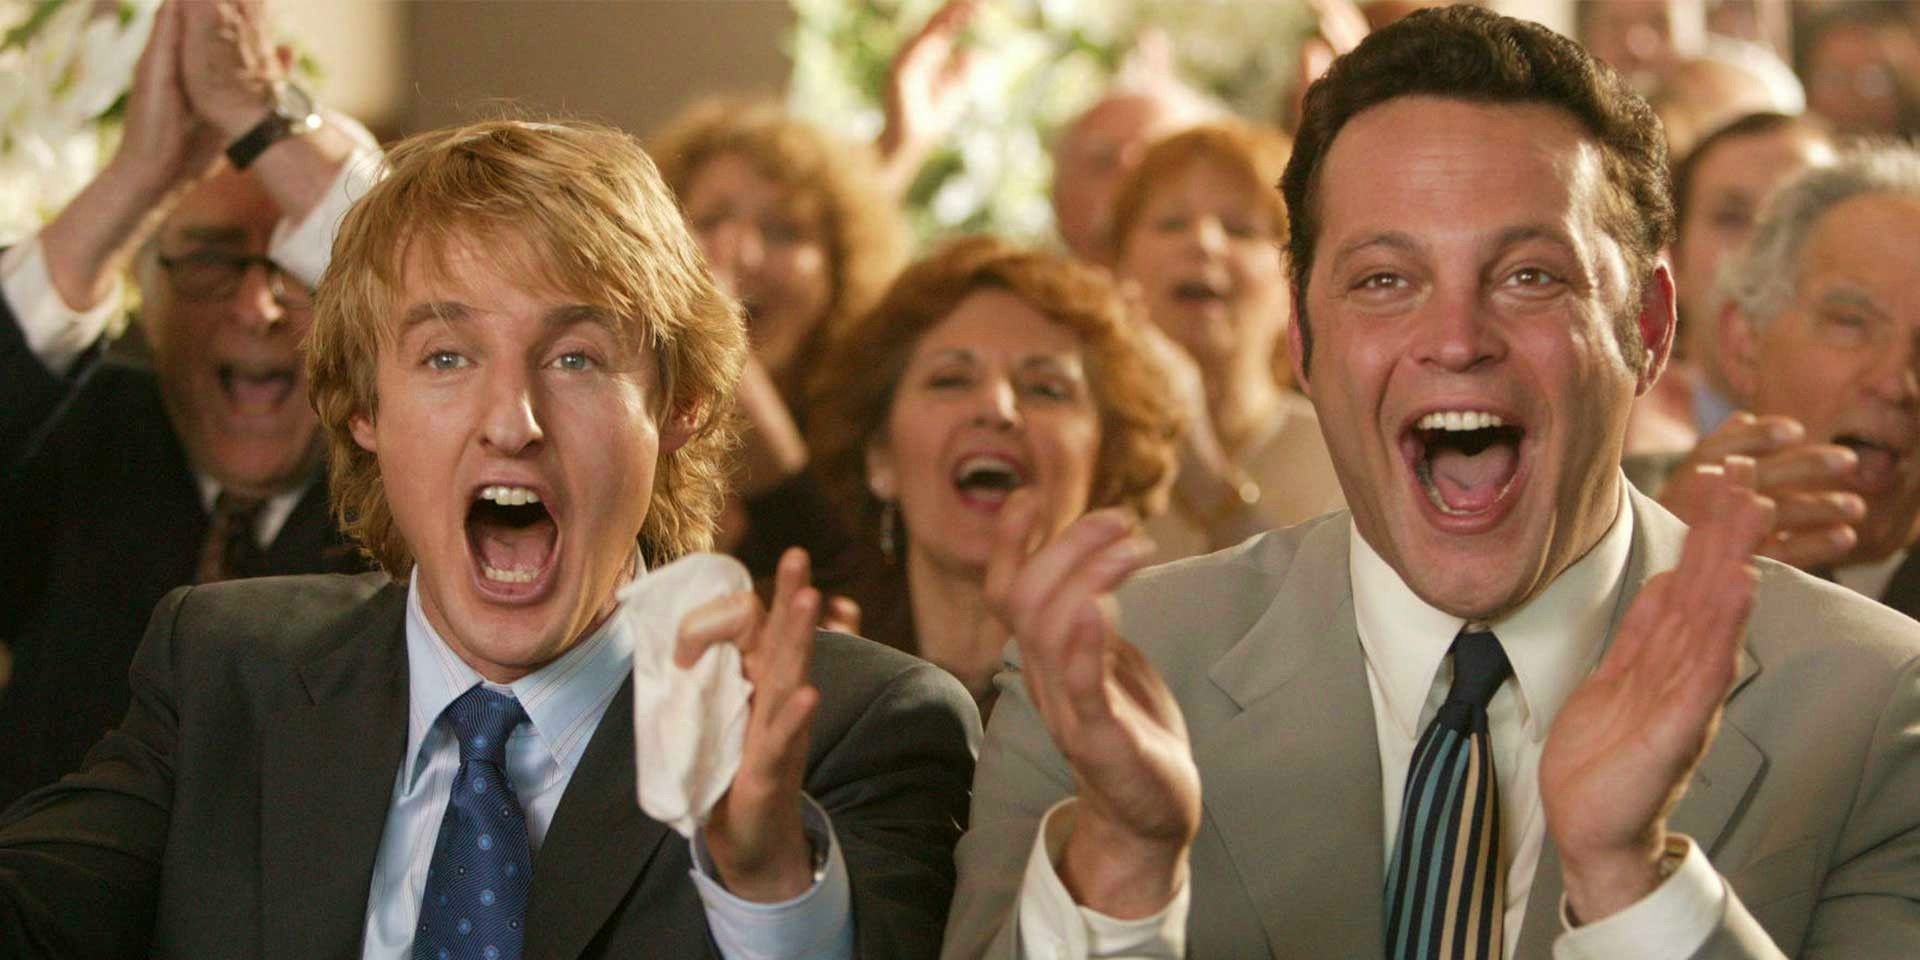 Owen Wilson and Vince Vaughn in Wedding Crashers